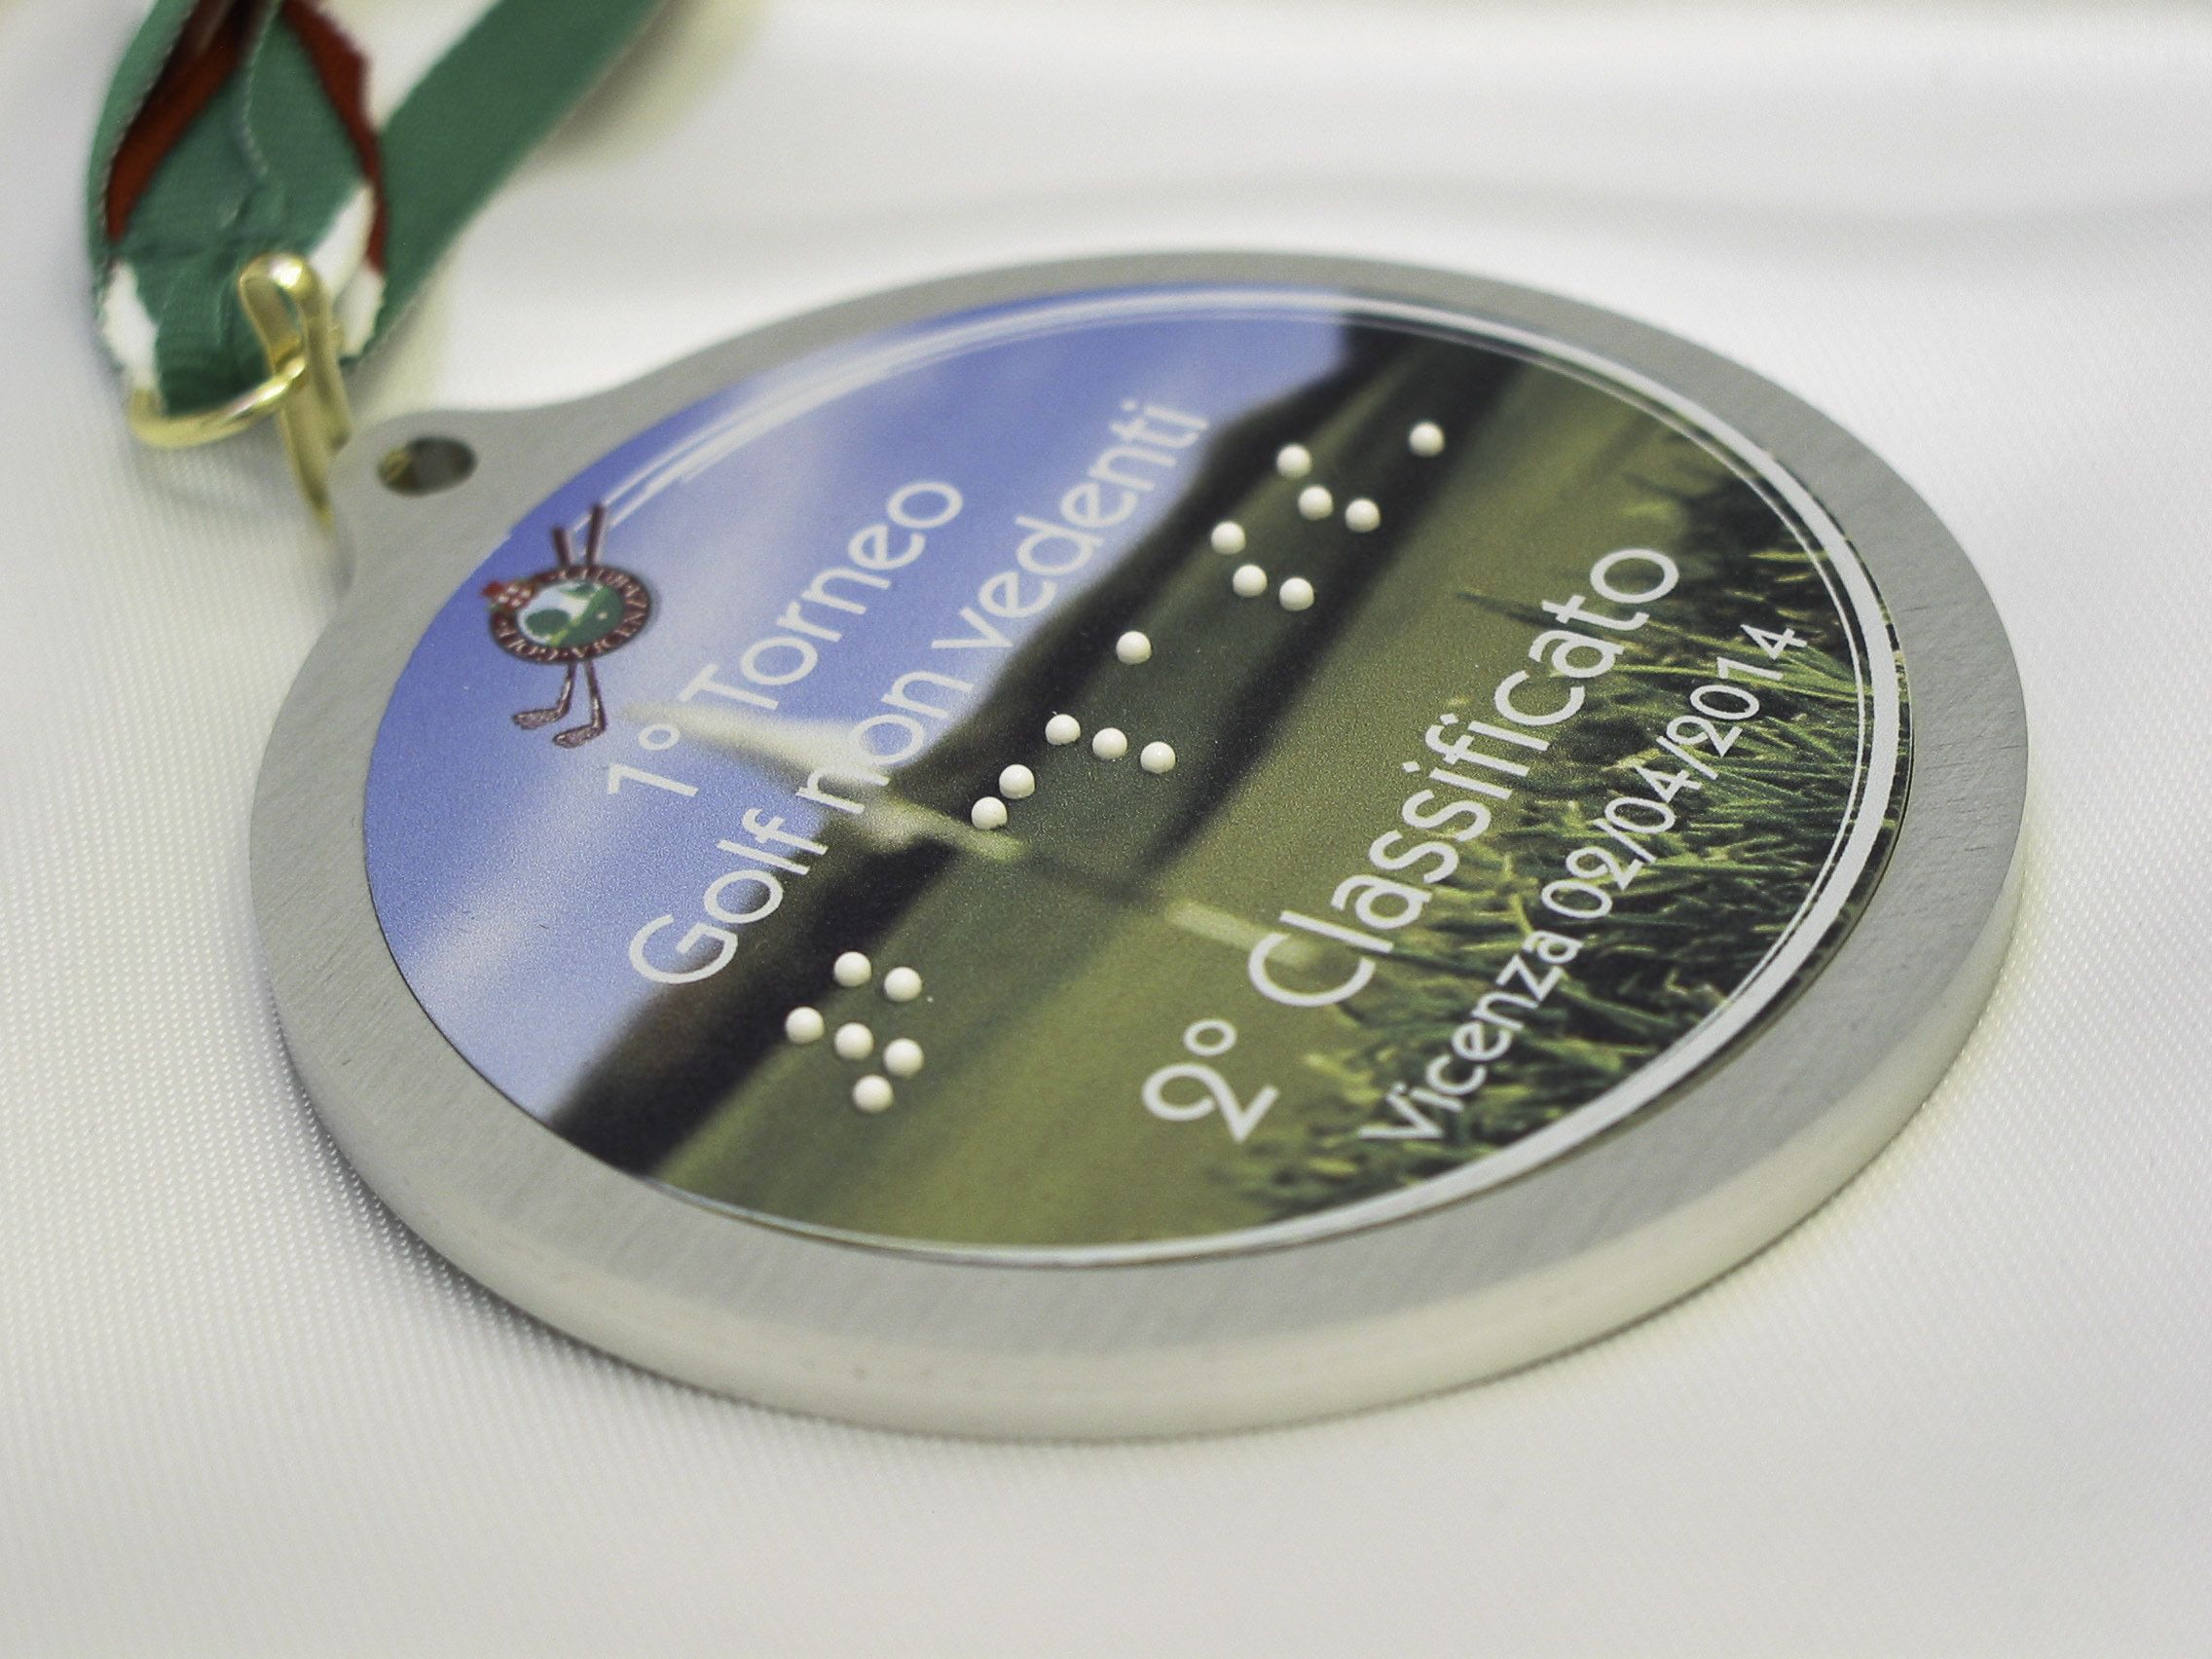 medaglia con scrittura braille per secondo classificato al primo torneo di golf per non vedenti